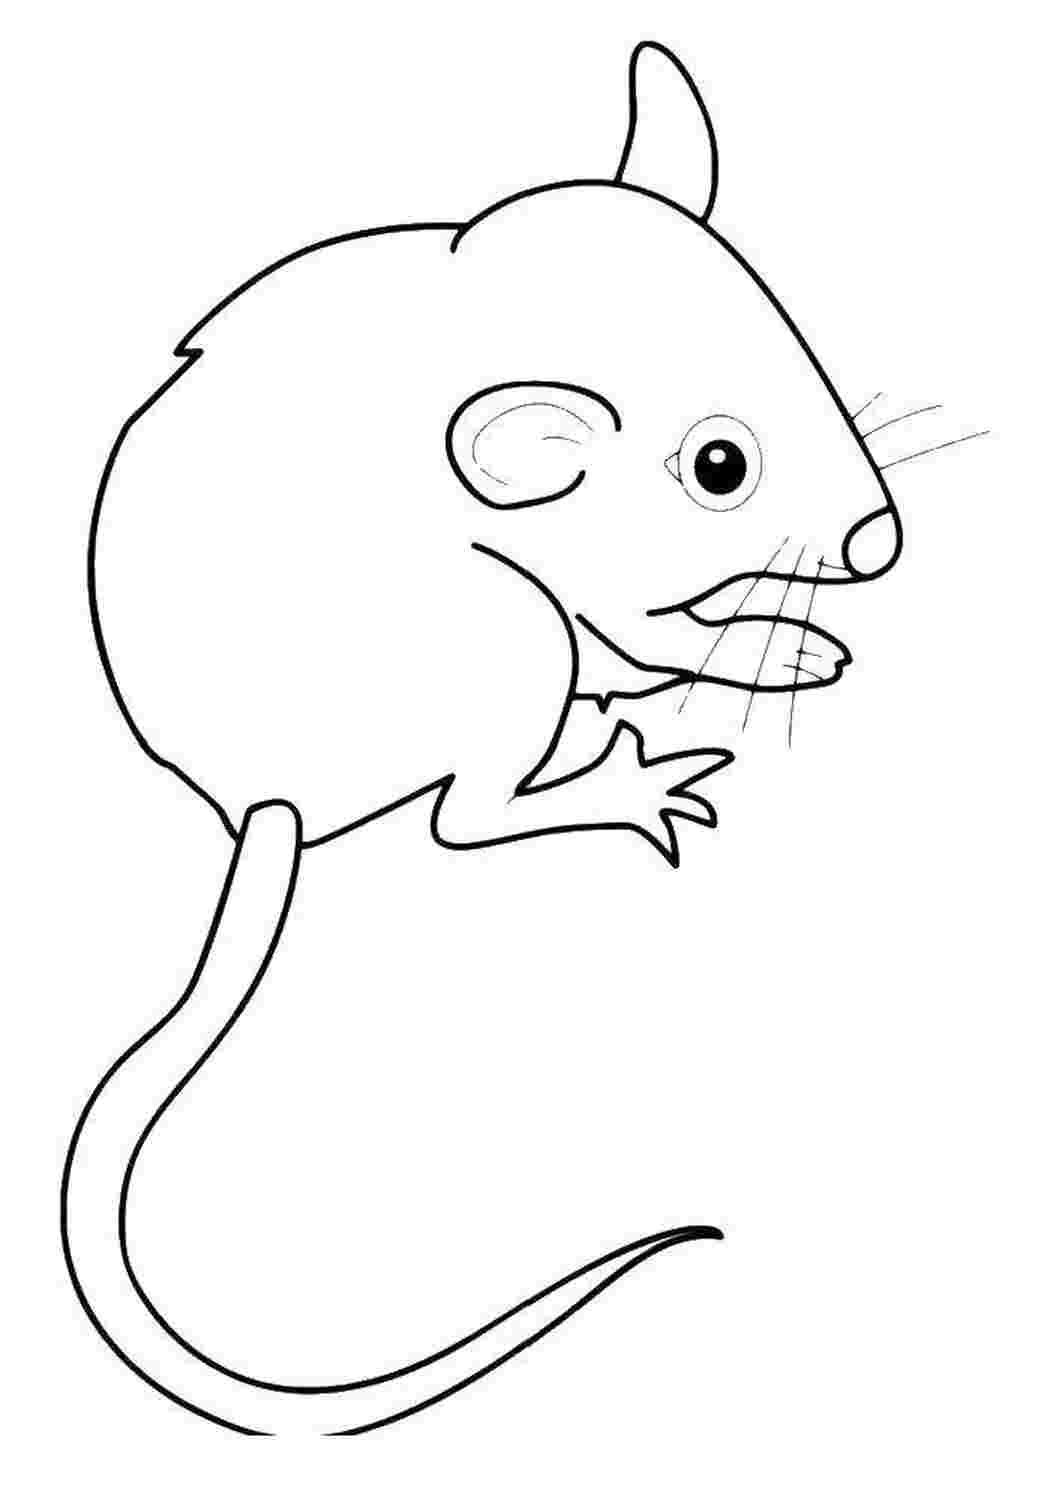 Раскраска мышь распечатать. Раскраска мышка. Мышь раскраска для детей. Мышь рисунок. Раскраска мышонок.